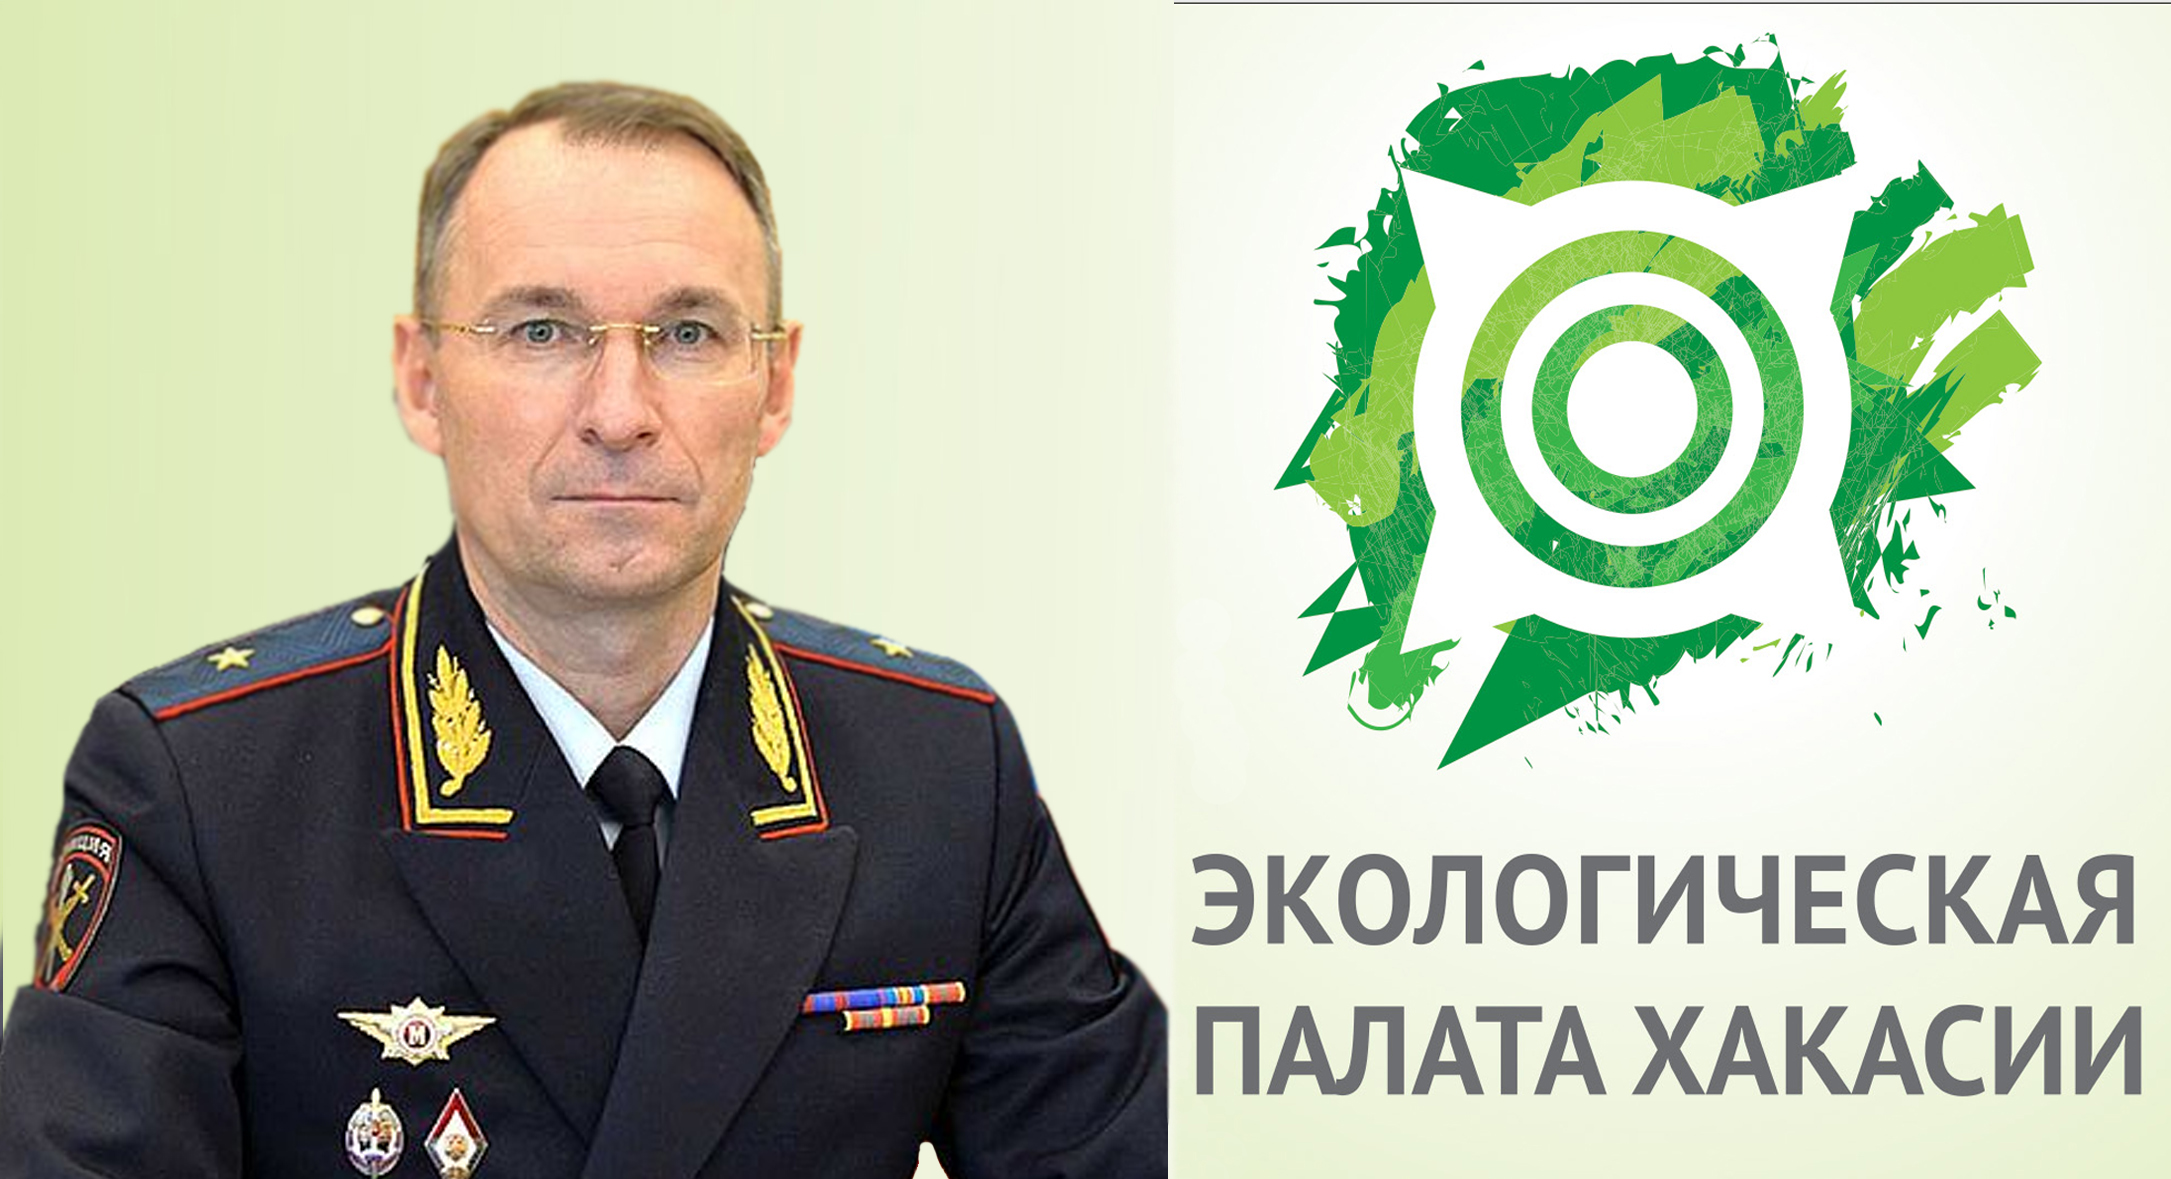 Экологическая палата поздравляет министра МВД по Хакасии с юбилеем